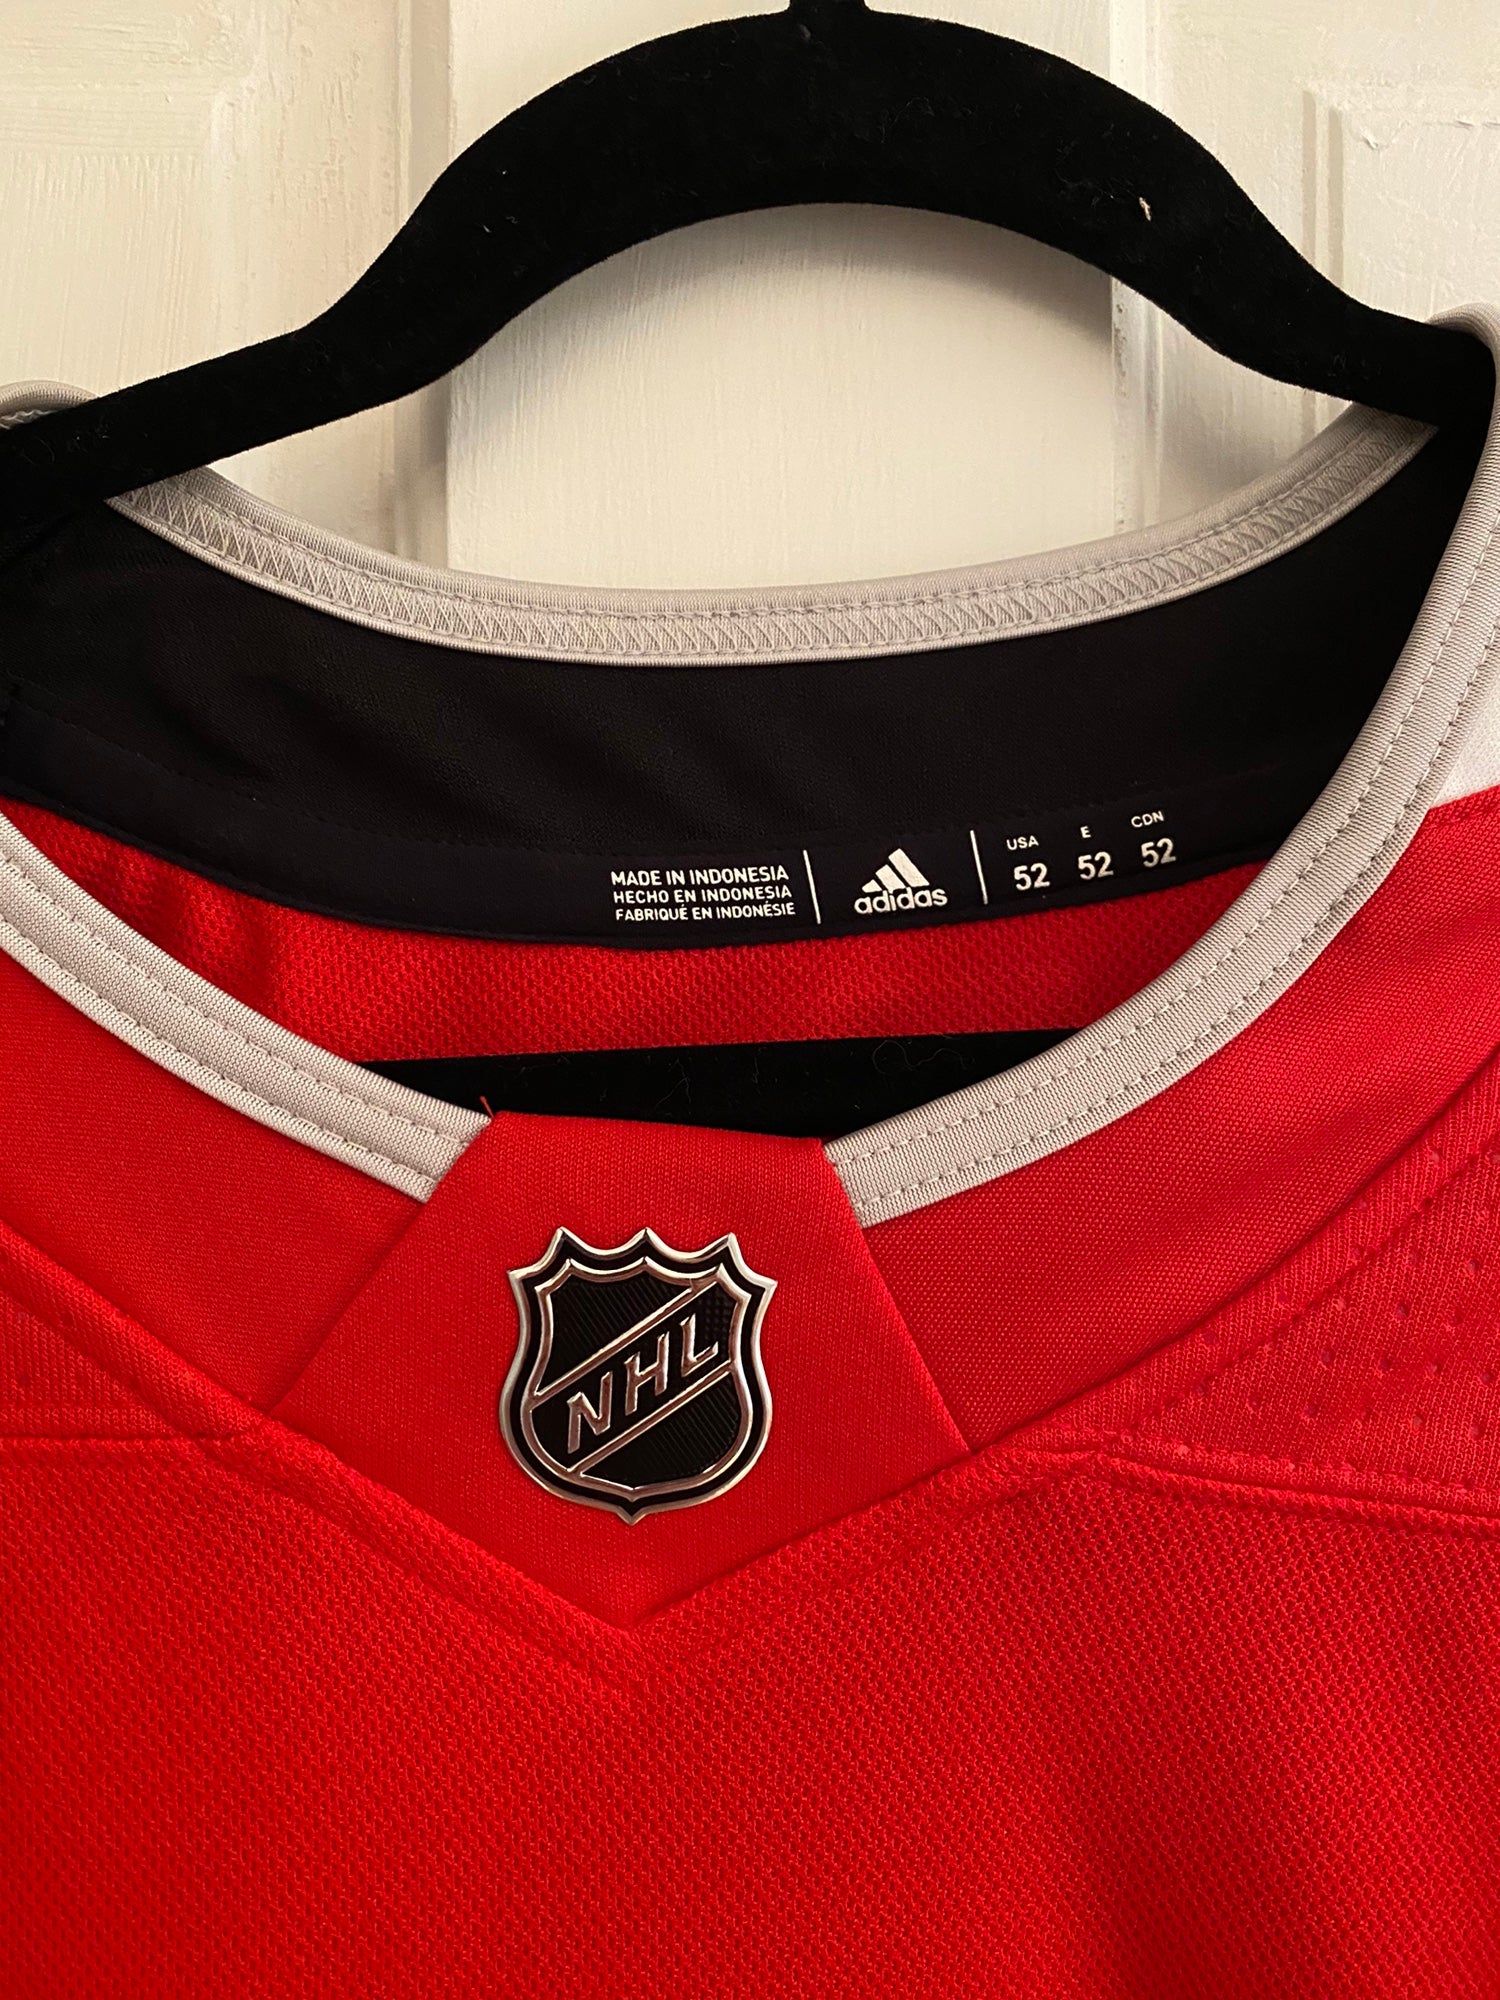 Adidas Authentic Ottawa Senators NHL 100 Classic Hockey Jersey Red 54